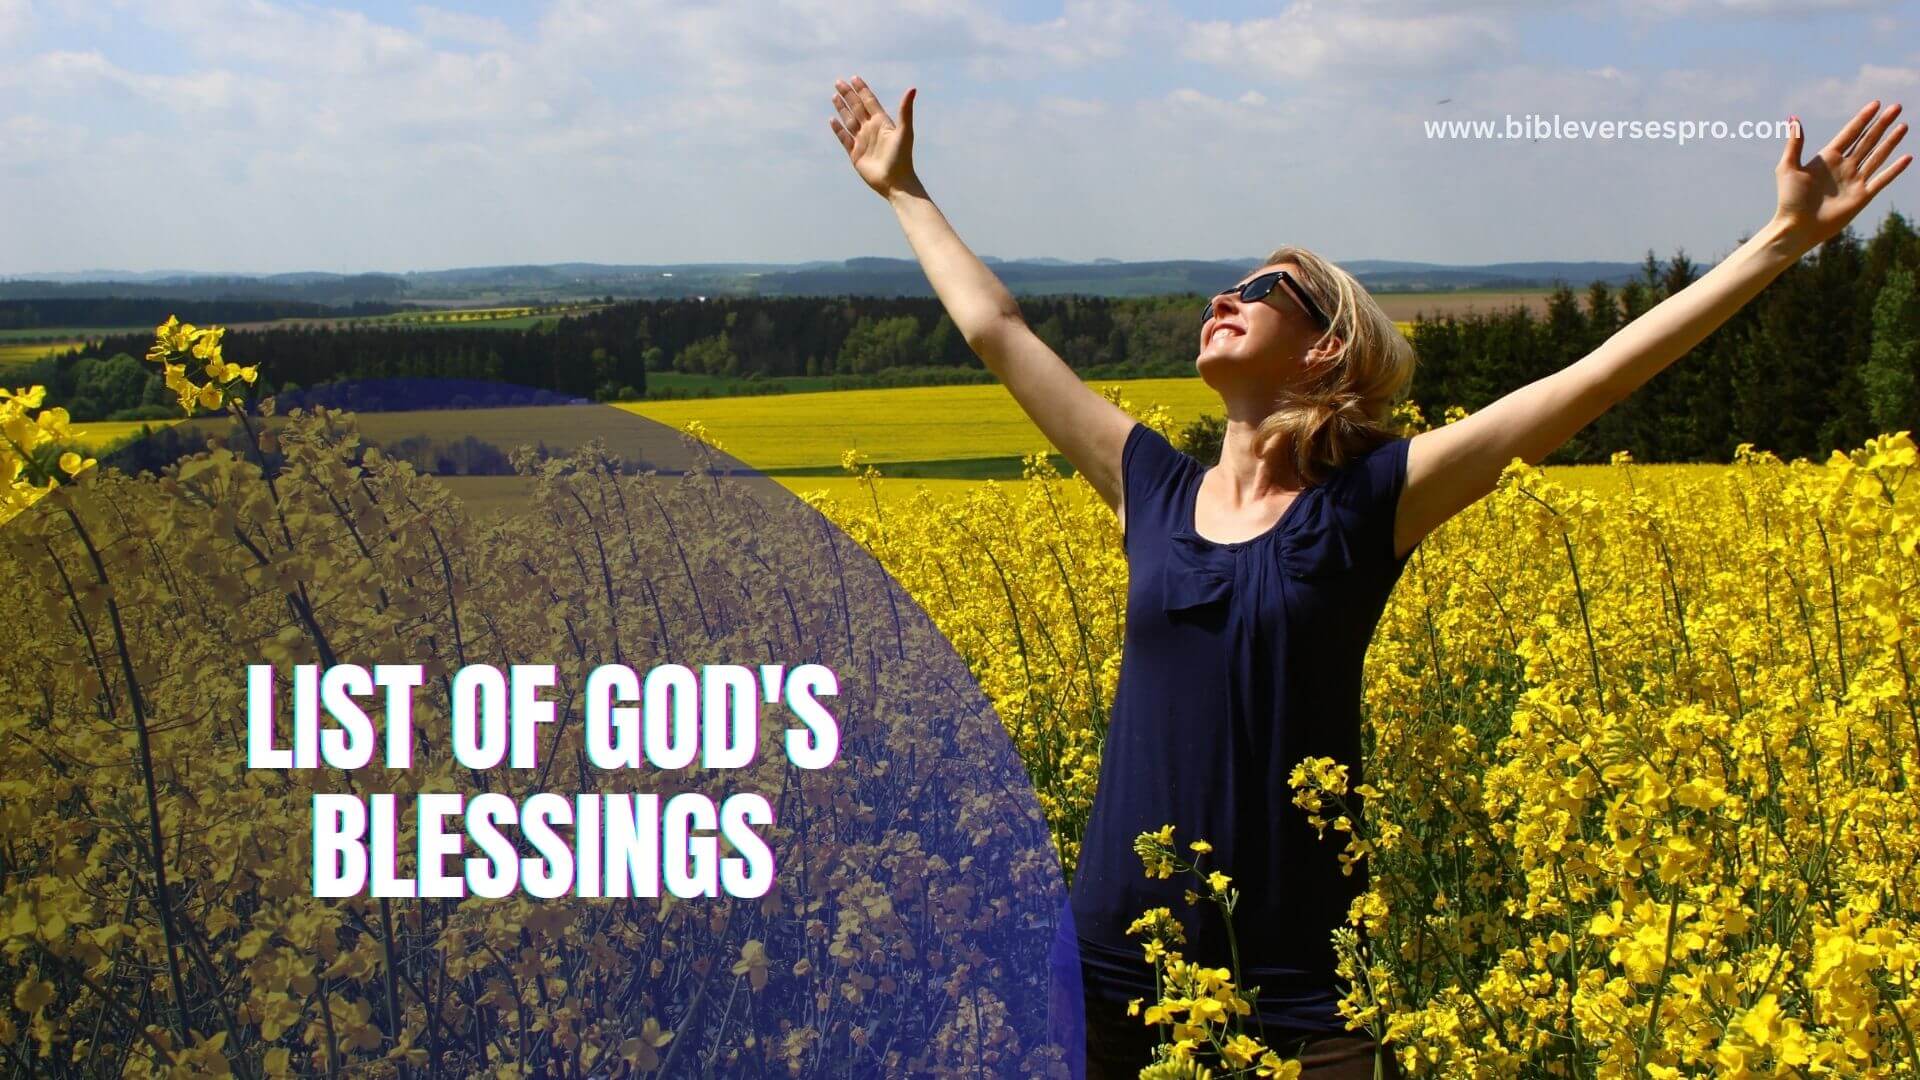 LIST OF GOD'S BLESSINGS (1)